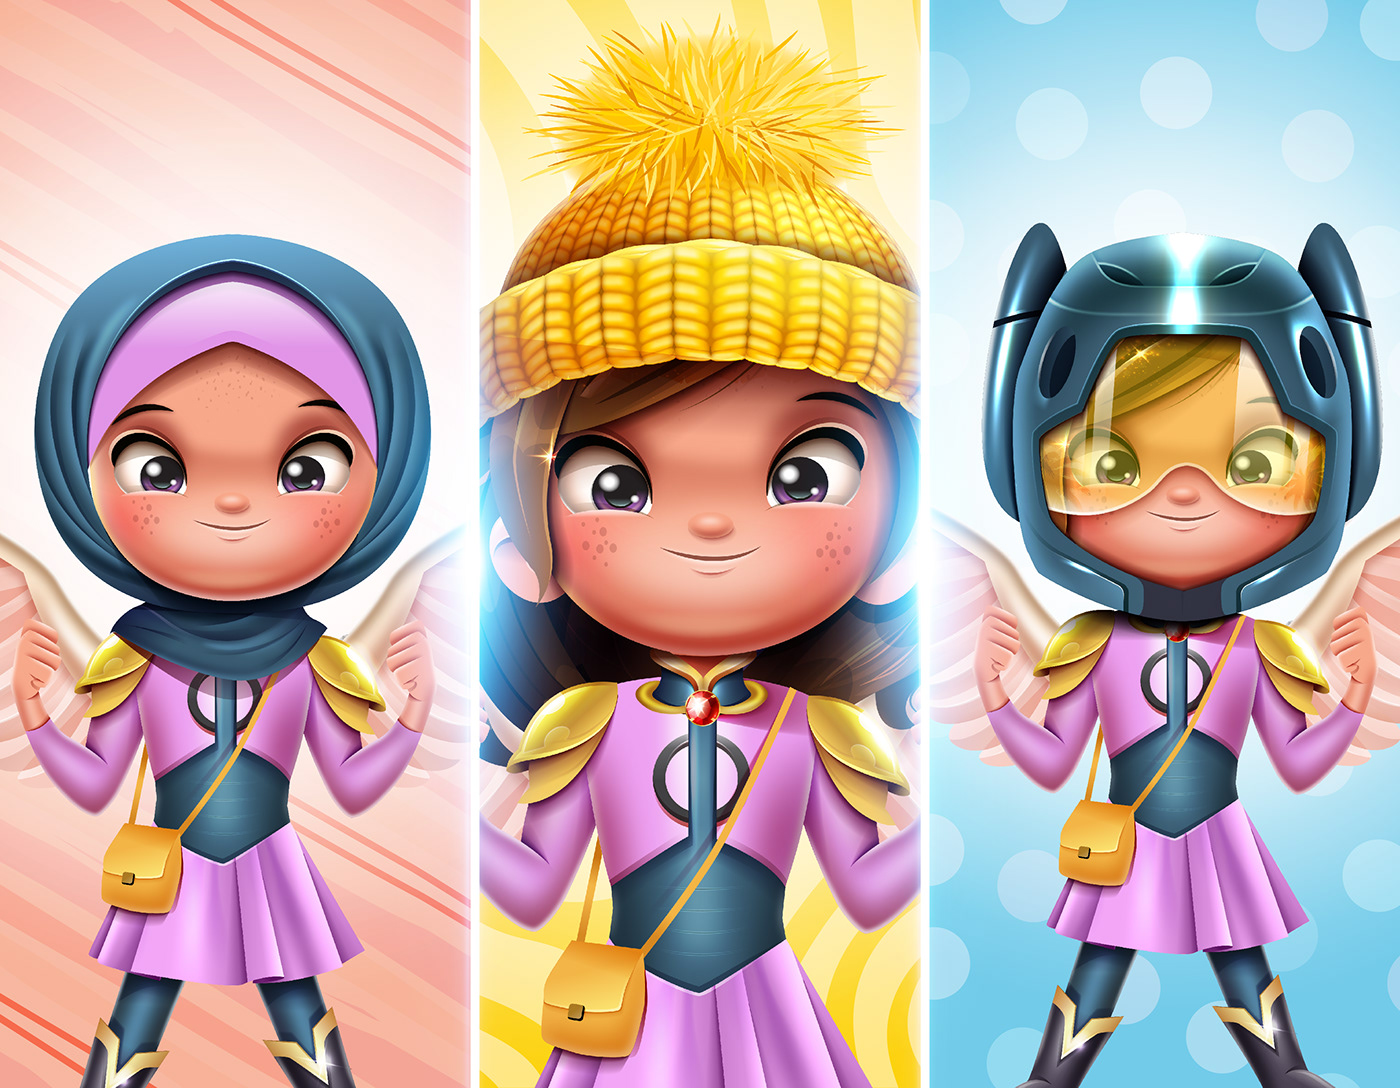 muslim girl hijab art girl Digital Art  Character design  Arab kids serag basel سراج باسل Saudi Arabia Super Hero